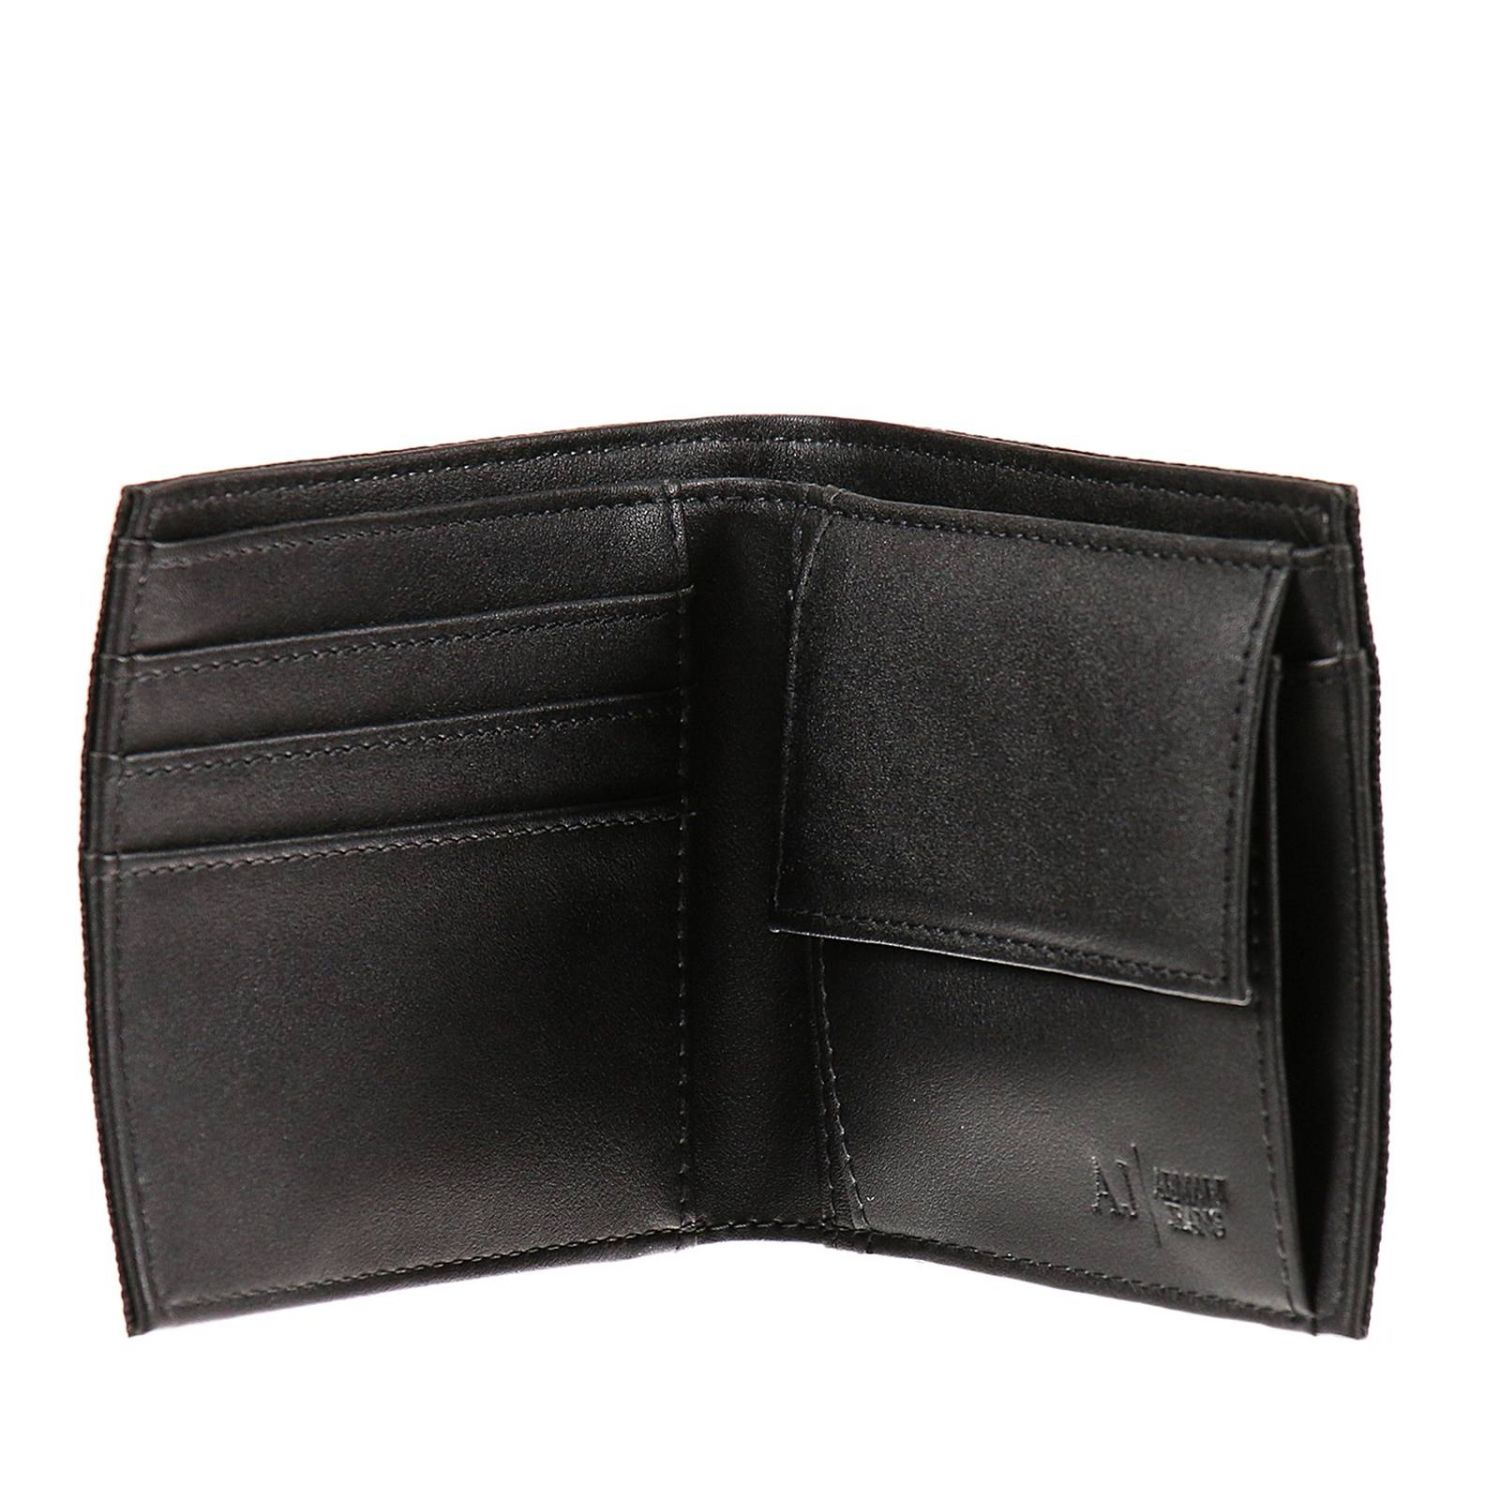 Wallet man Armani Jeans | Wallet Armani Jeans Men Black | Wallet Armani ...